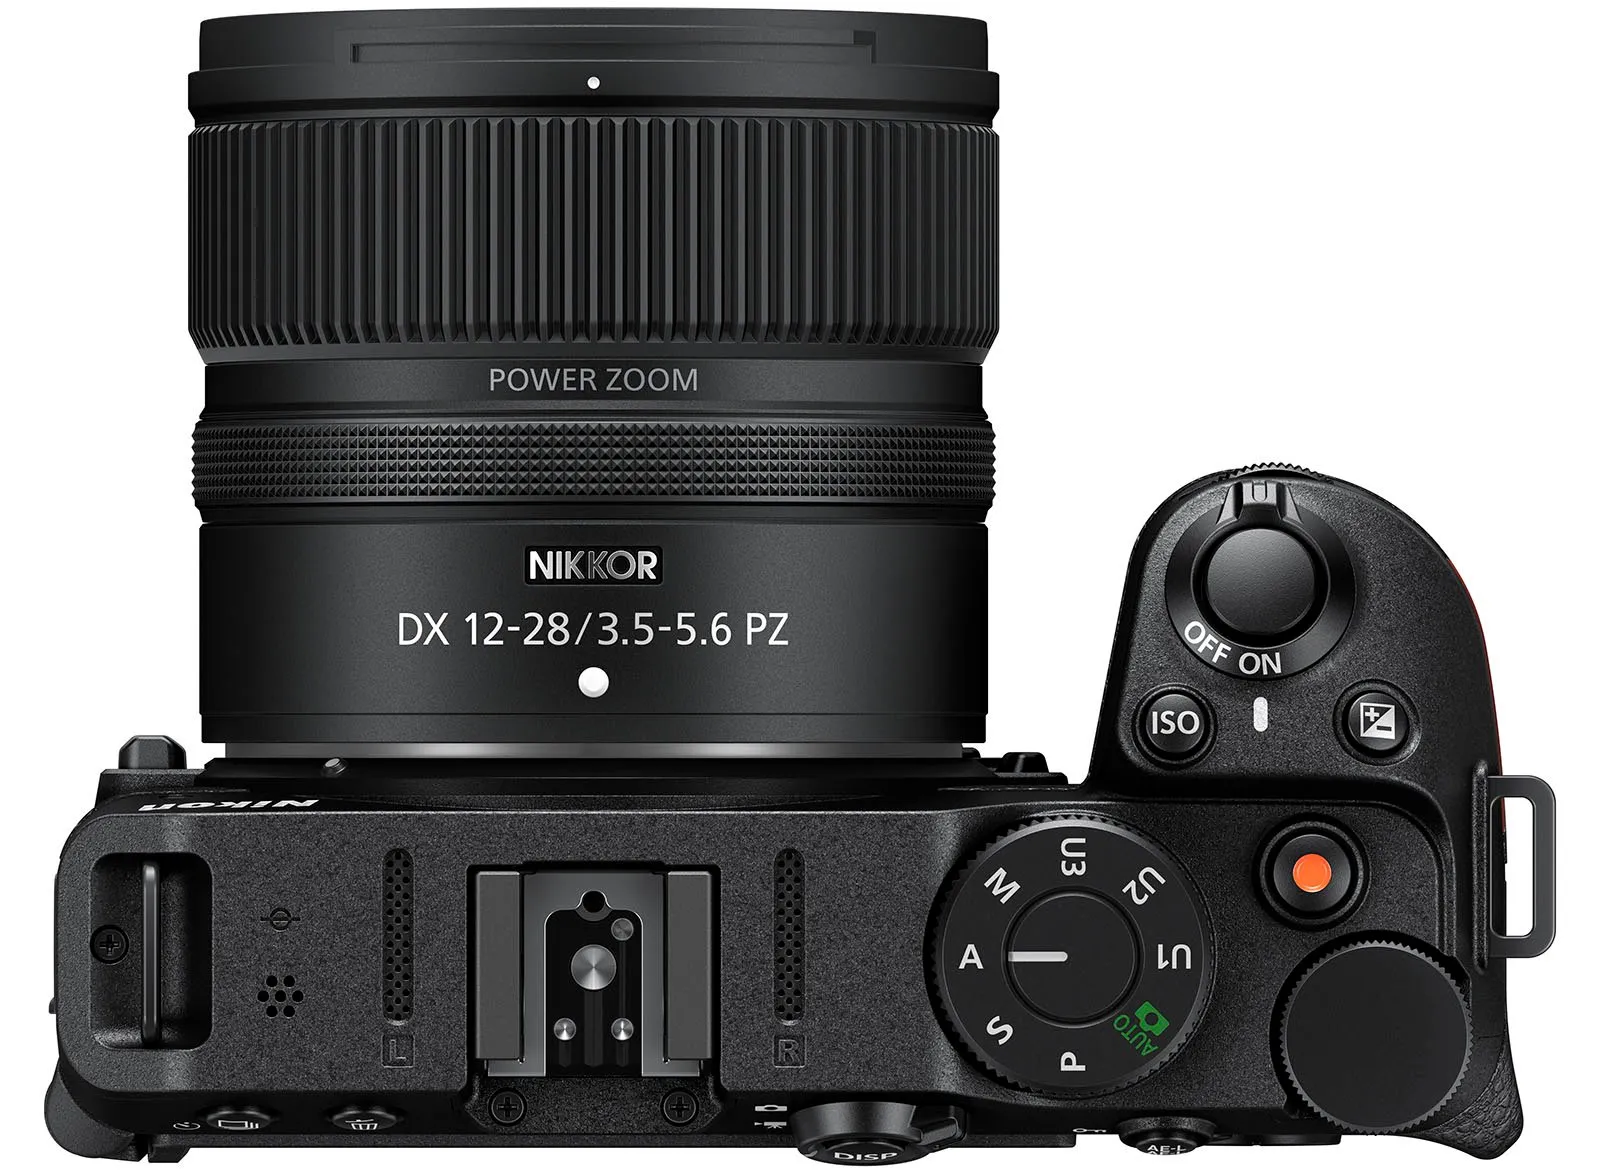 Nikon ra mắt ống kính DX 12-28mm F3.5-5.6 PZ VR cho máy ảnh ngàm Z